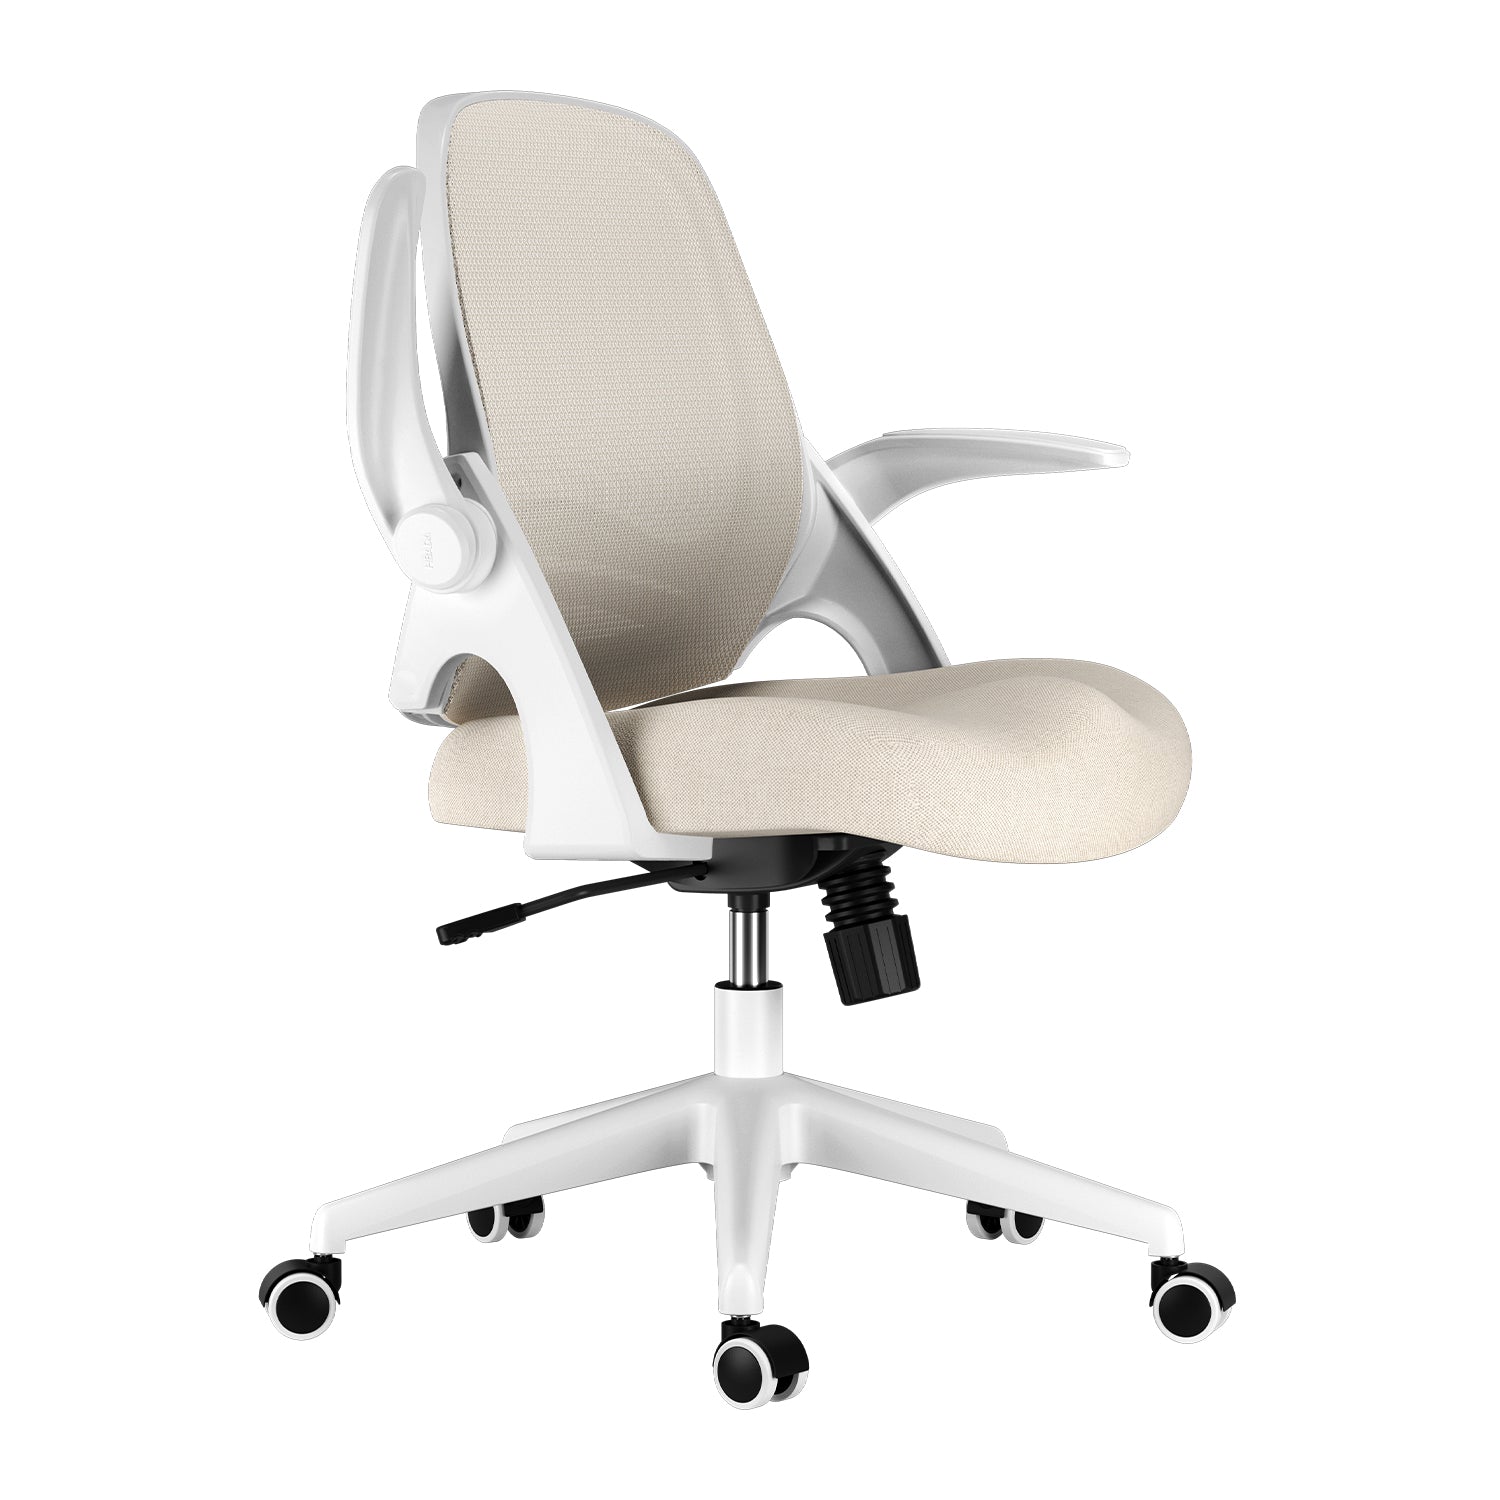 HBADA Penguin-inspired Office Chair-Gray